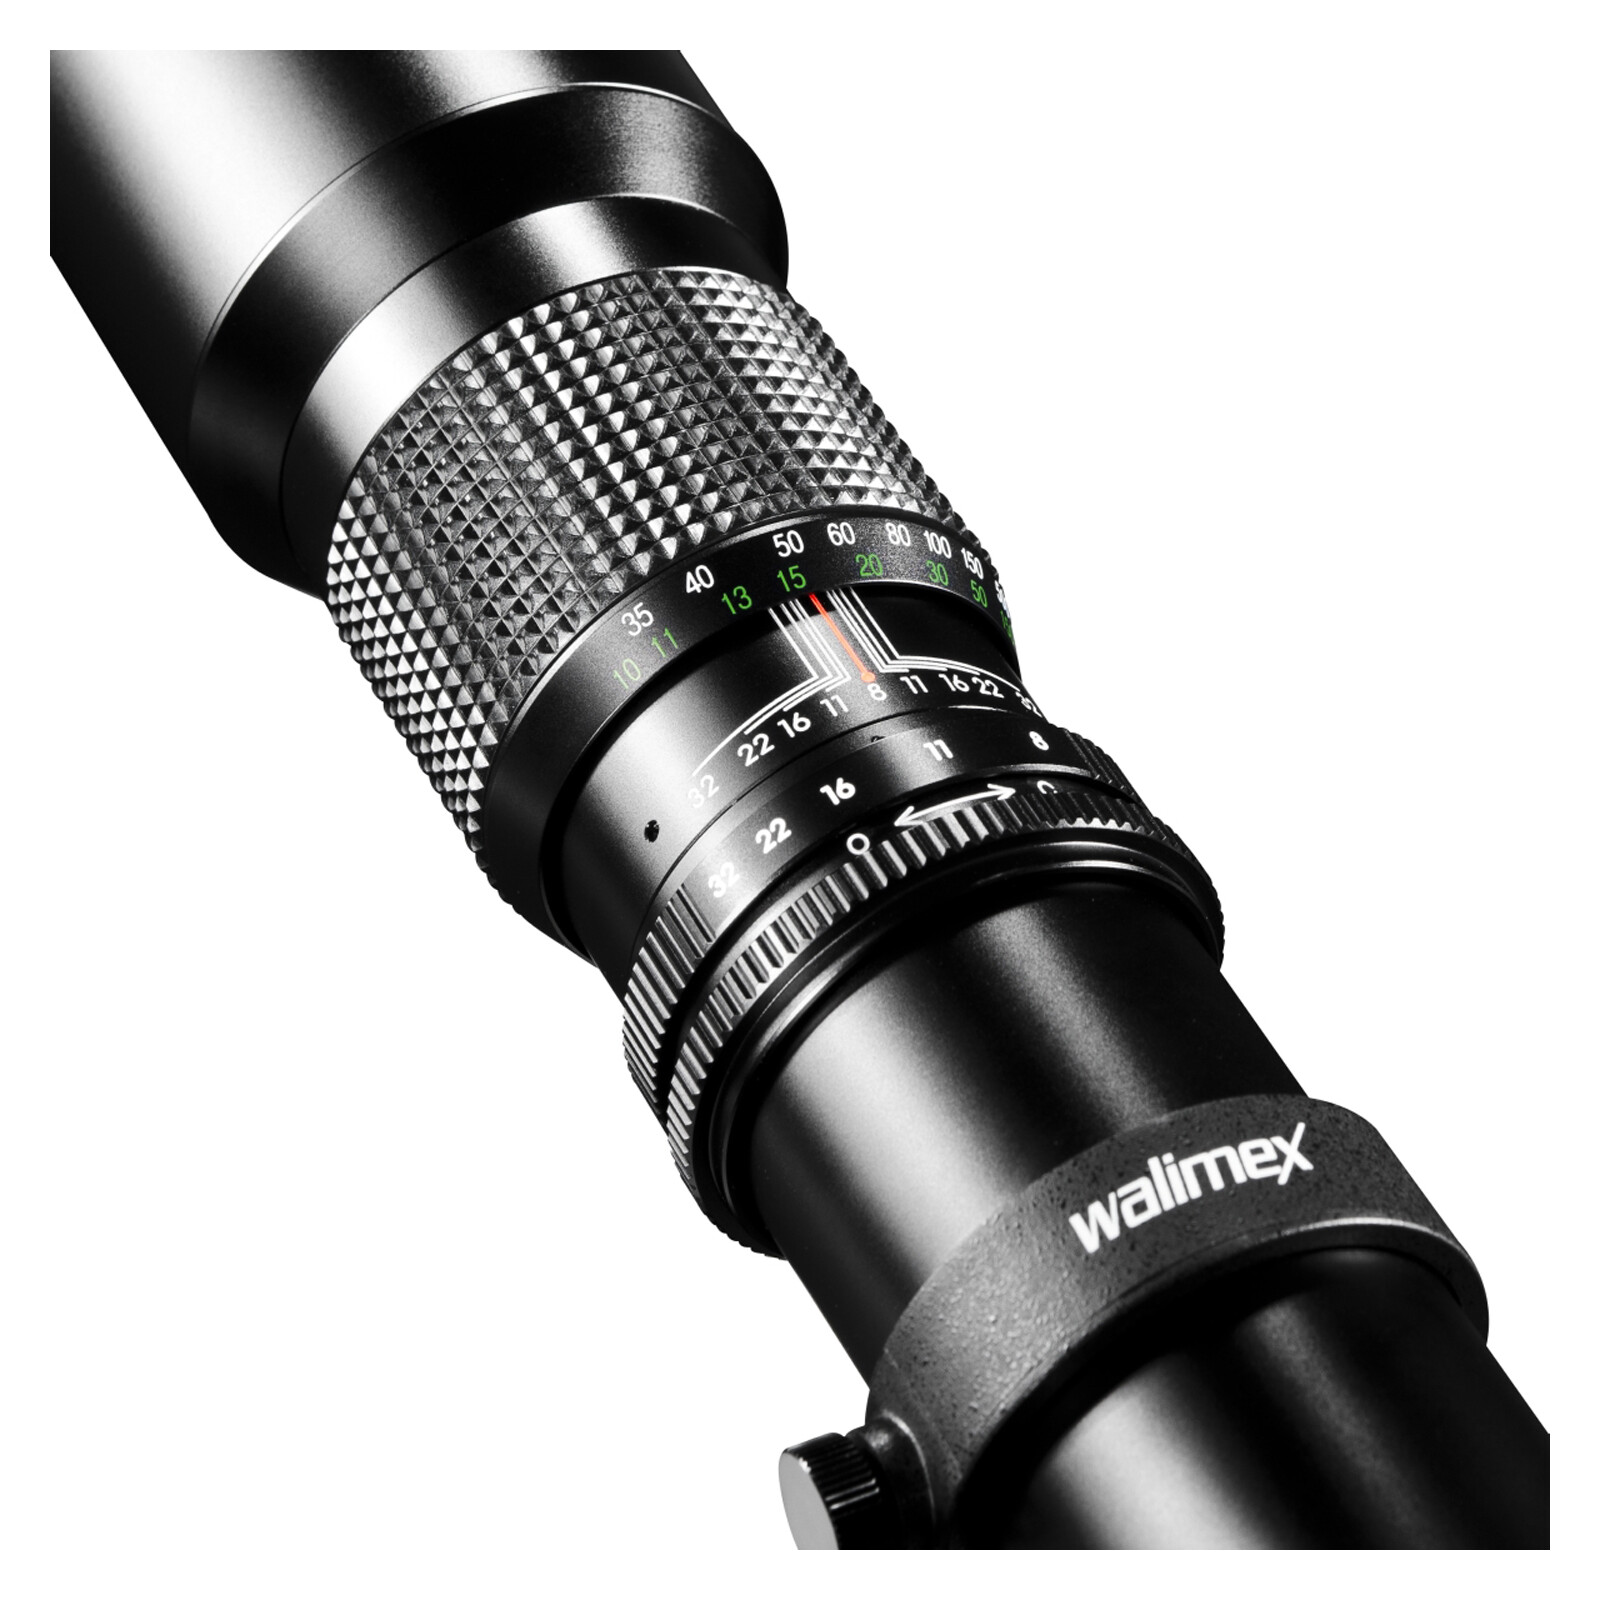 walimex 500/8,0 DSLR Nikon F  + UV Filter